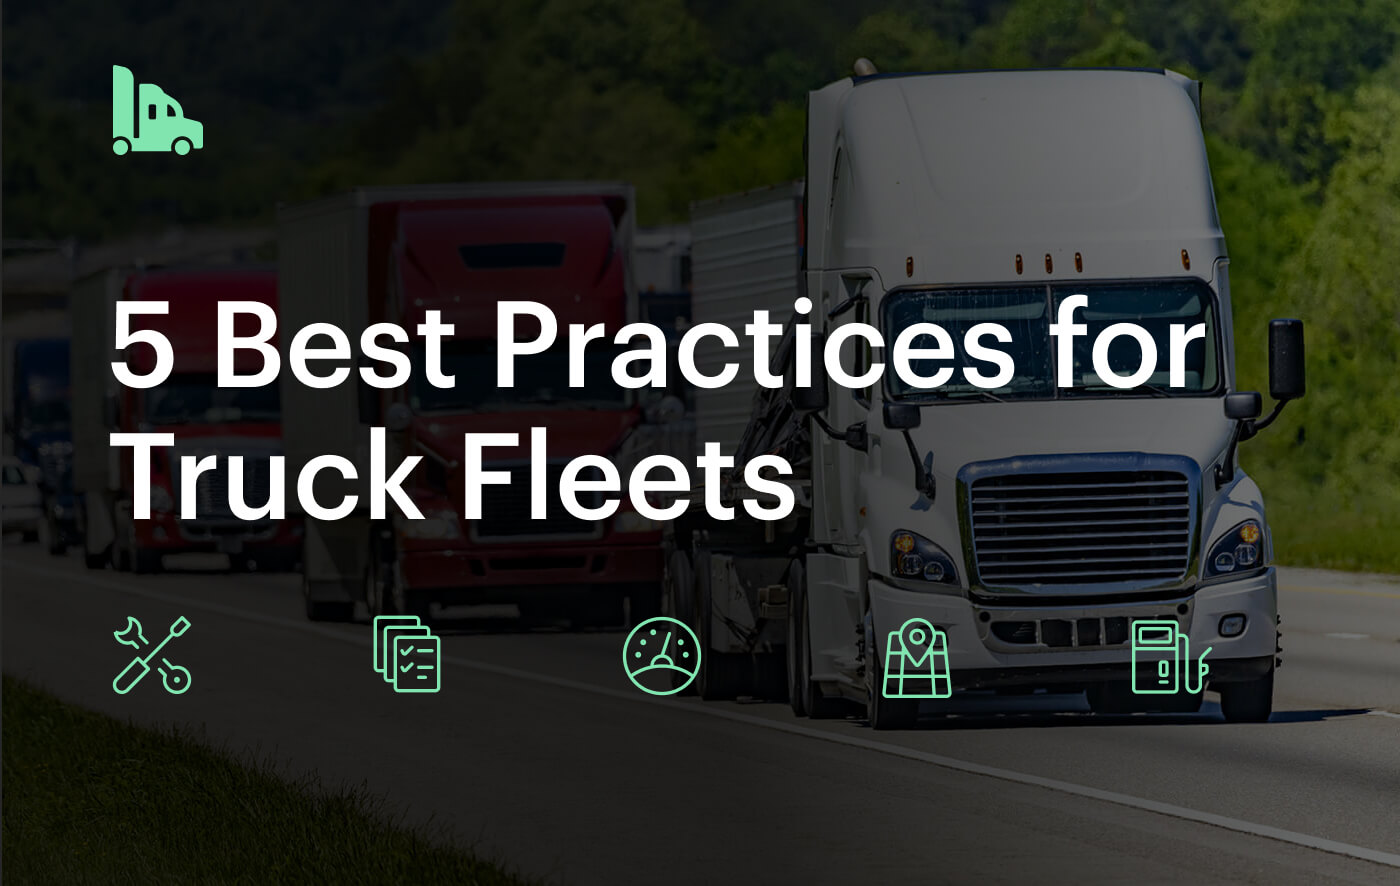 Truck fleet blog